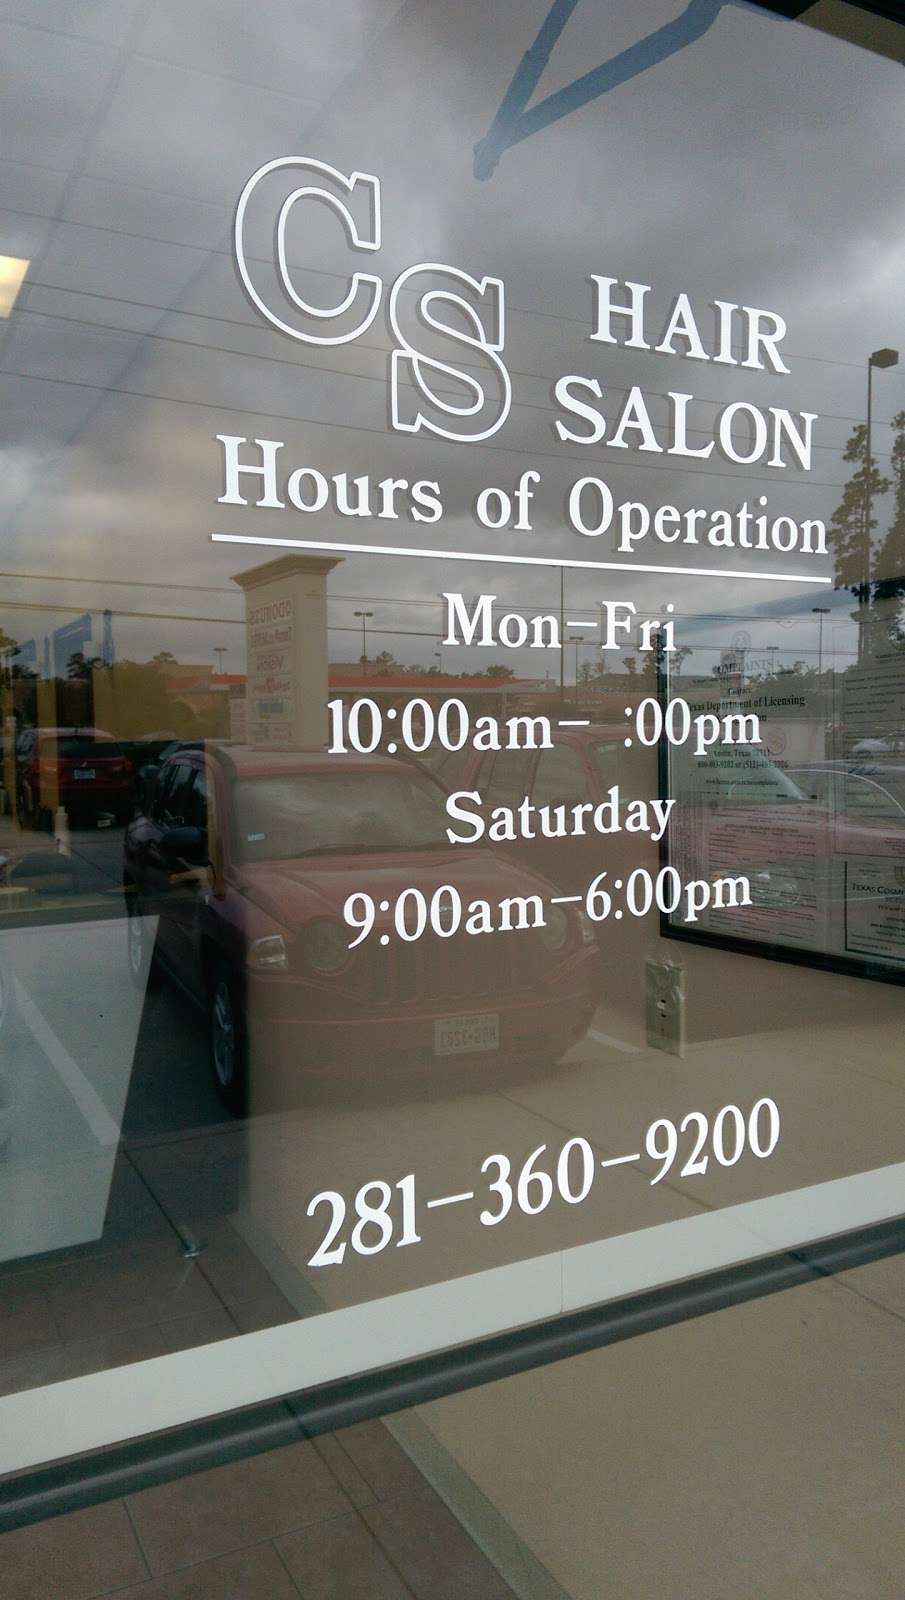 CS Hair Salon | 3809 Atascocita Road, Humble, TX 77396 | Phone: (281) 360-9200